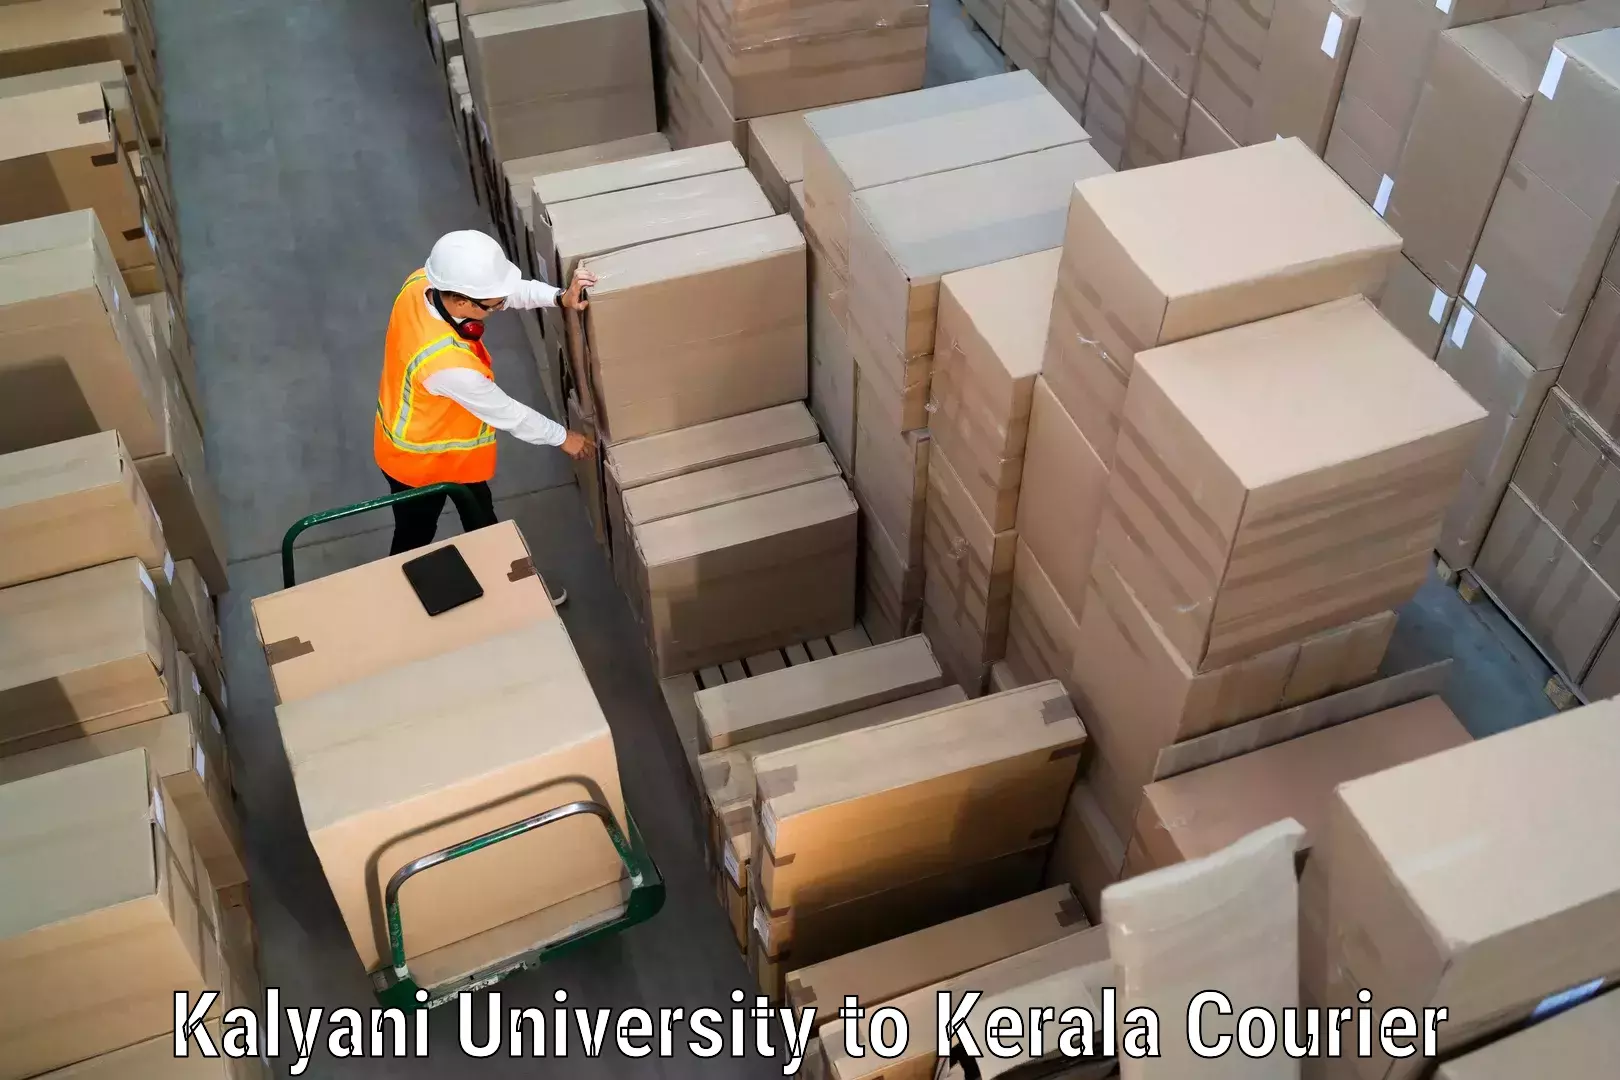 Nationwide courier service Kalyani University to Cochin Port Kochi